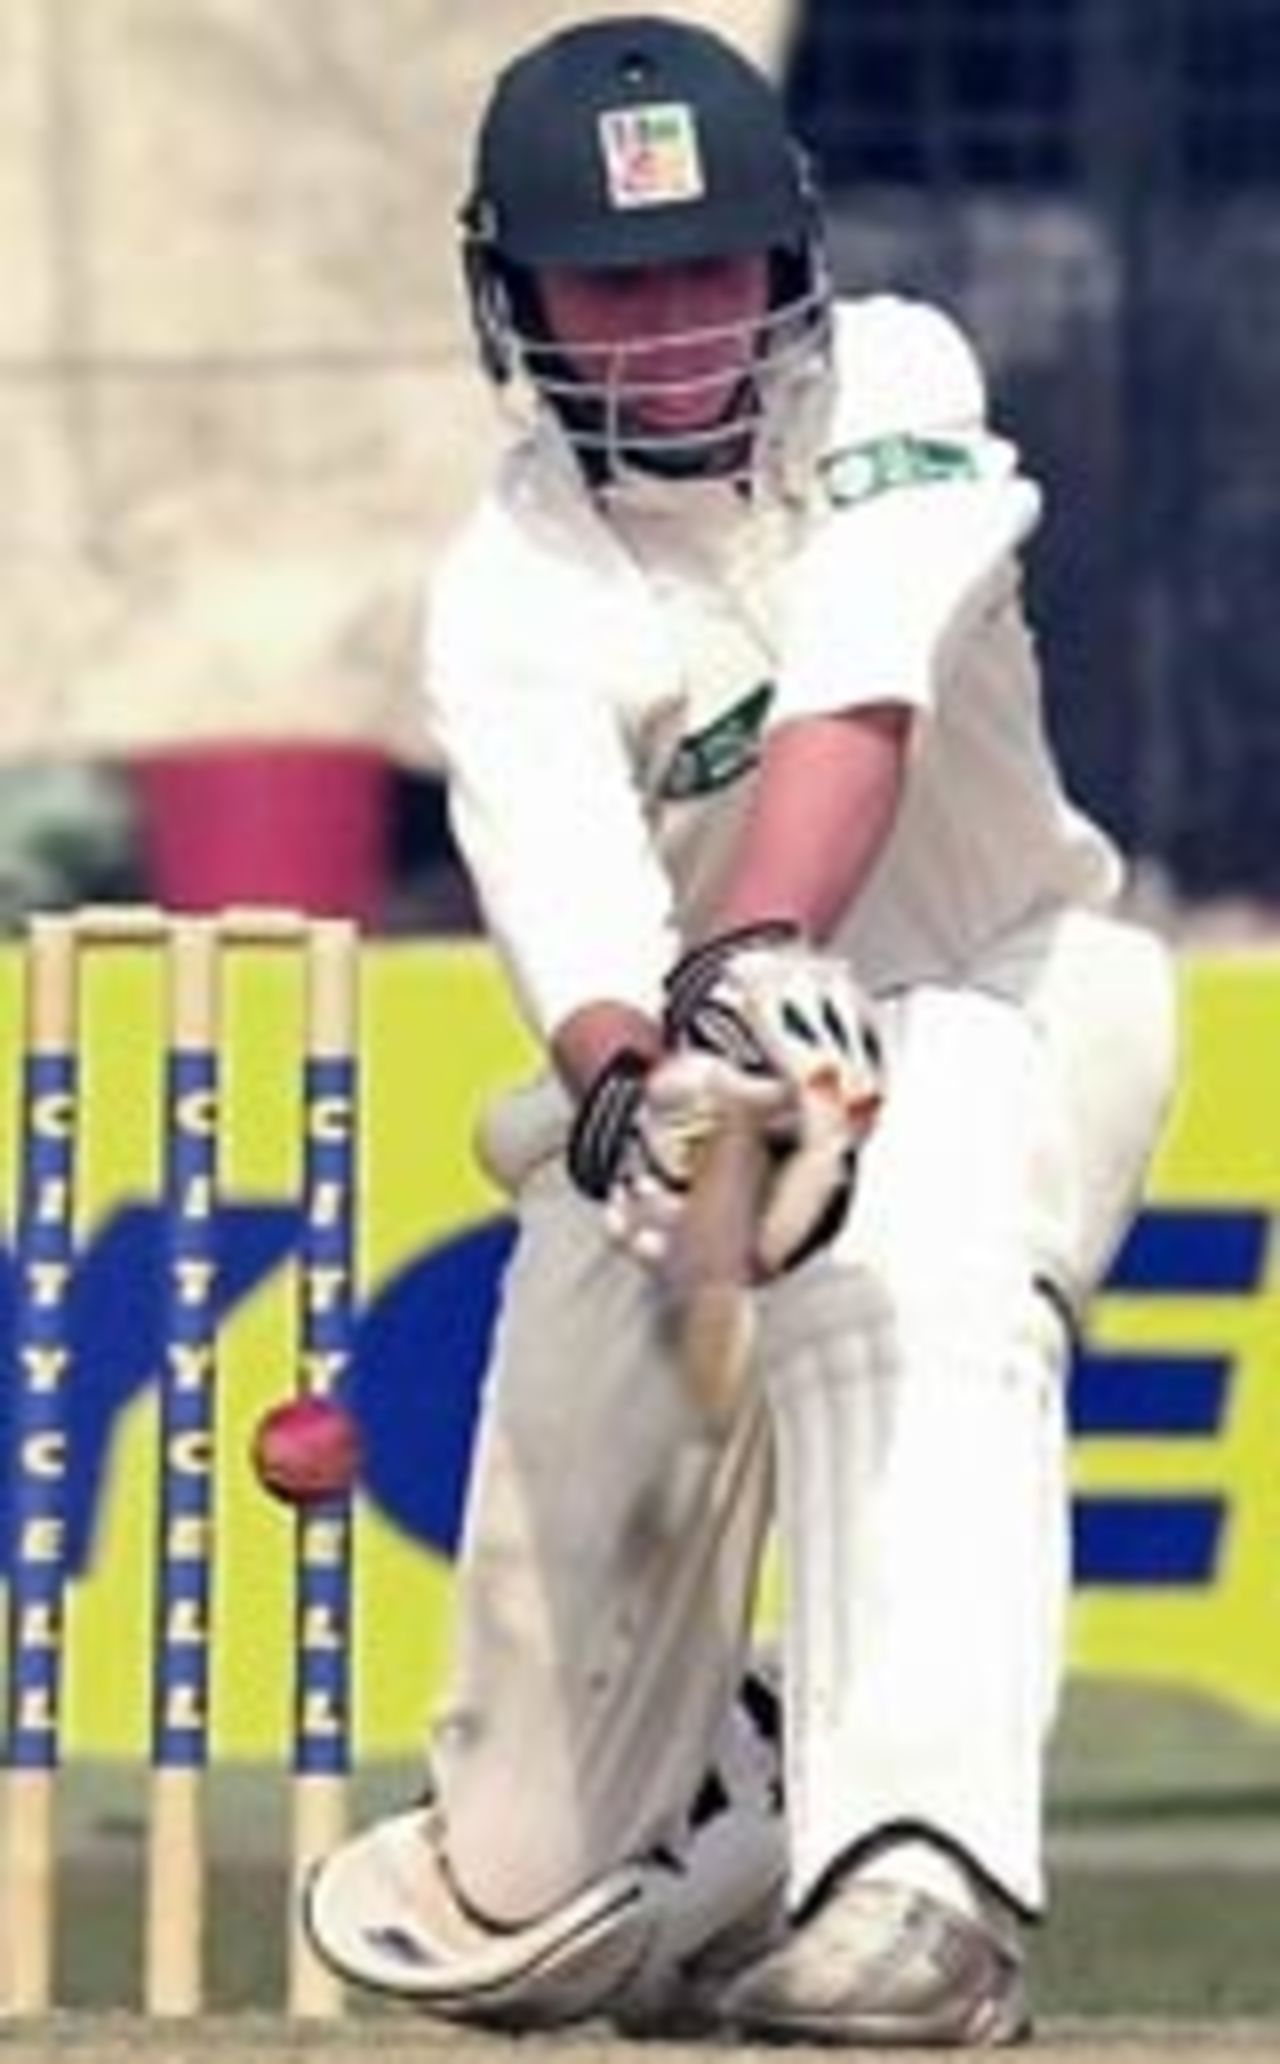 Brendan Taylor on his knees playing the sweep, Bangladesh v Zimbabwe, 2nd Test, Dhaka, January 16, 2005